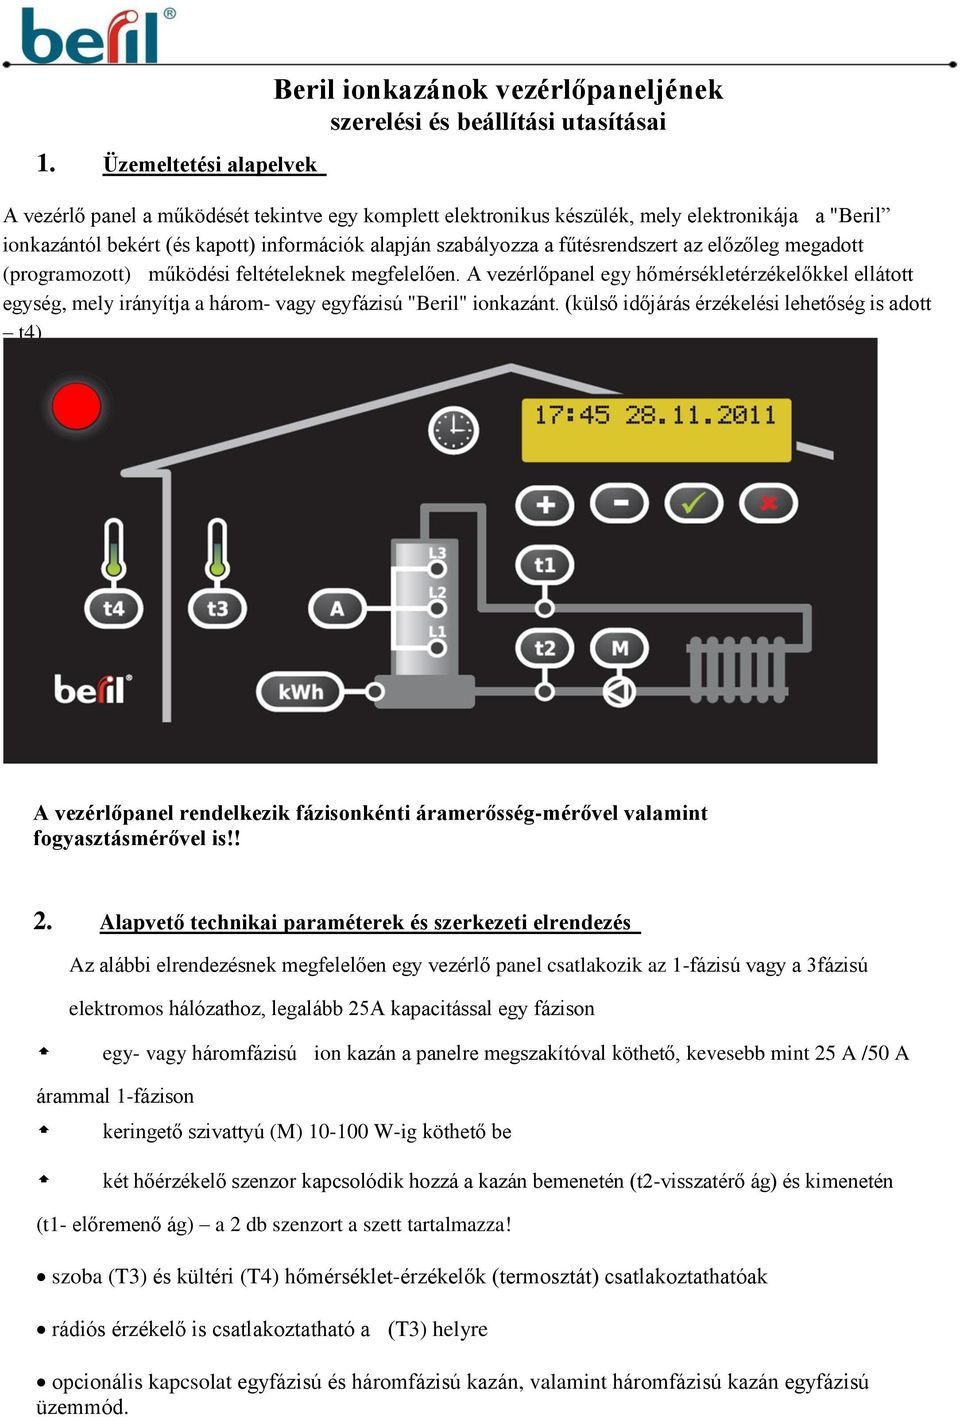 Beril ionkazánok vezérlőpaneljének szerelési és beállítási utasításai - PDF  Free Download